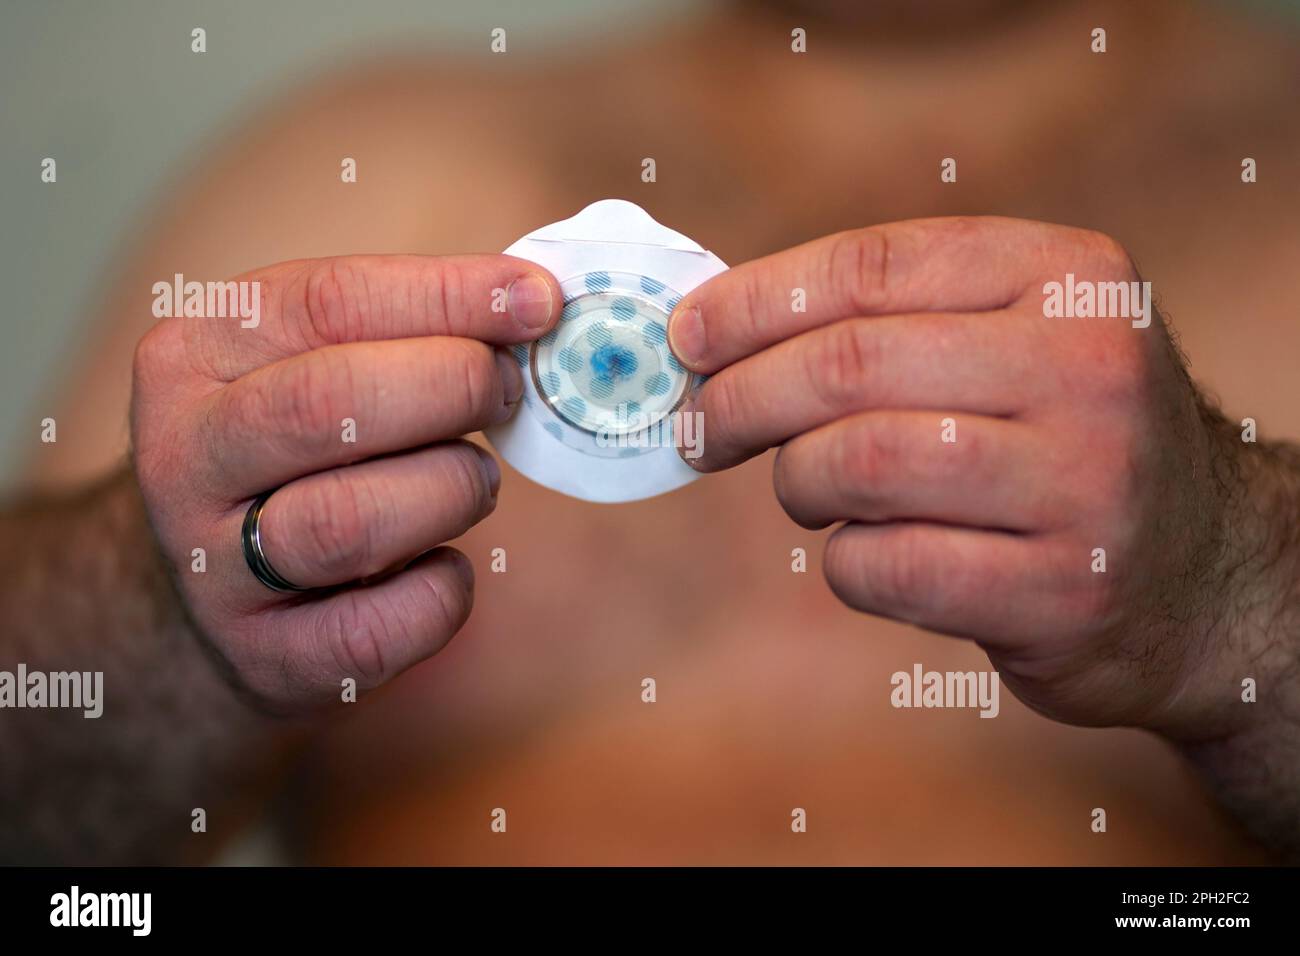 Uomo bianco di mezza età che utilizza l'apparecchiatura di monitoraggio cardiaco Novacore R-Test 4 Evolution Foto Stock